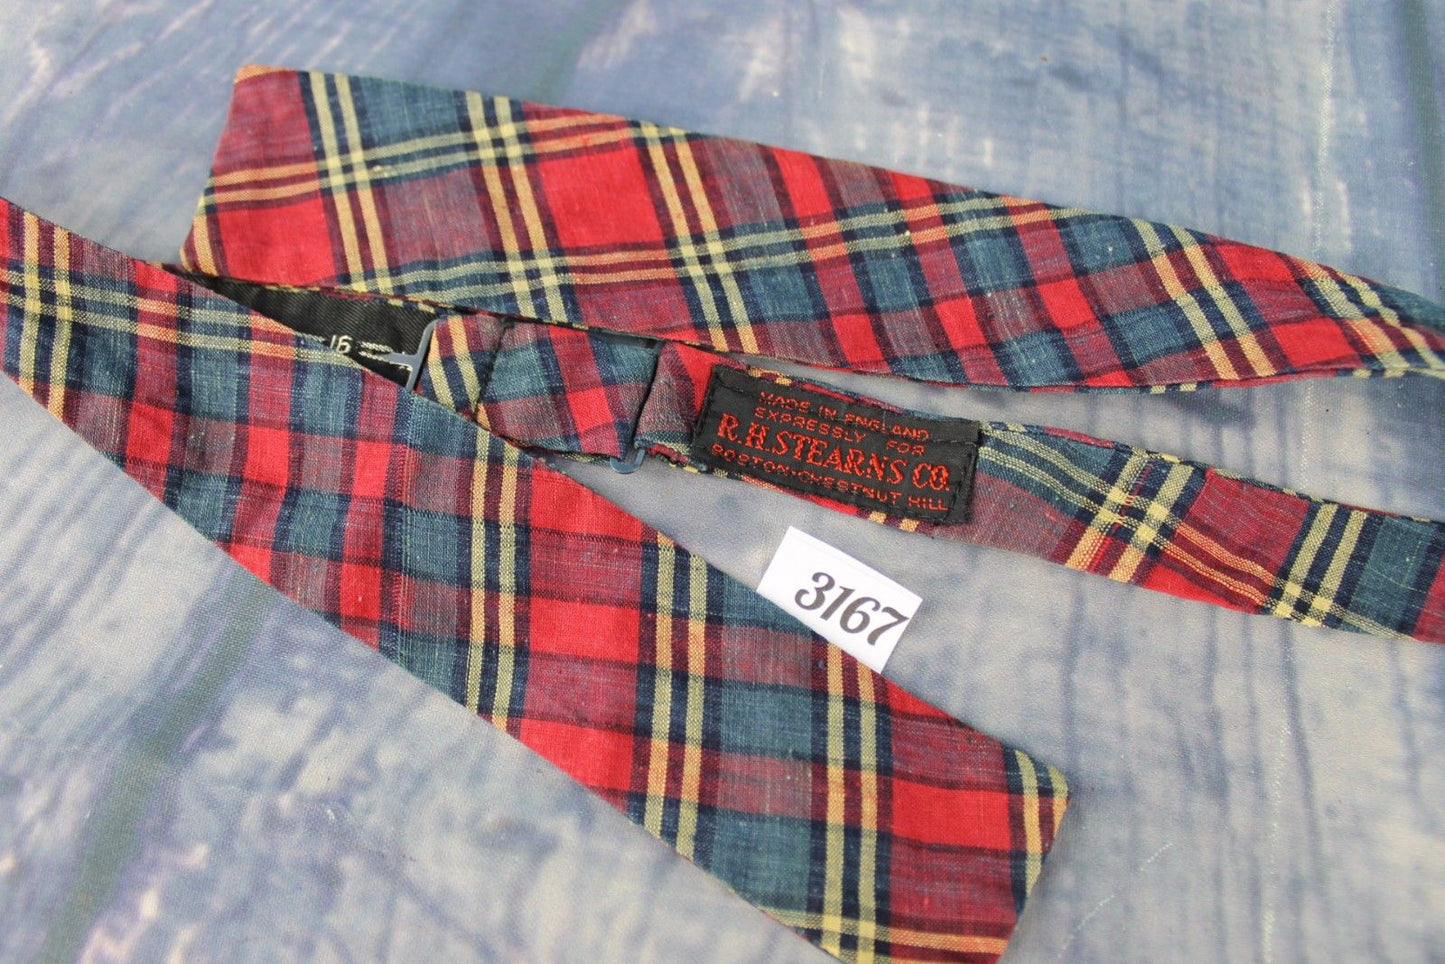 Vintage Rh Stearns English Self Tie Adjustable Straight End Bow Tie Tartan Plaid